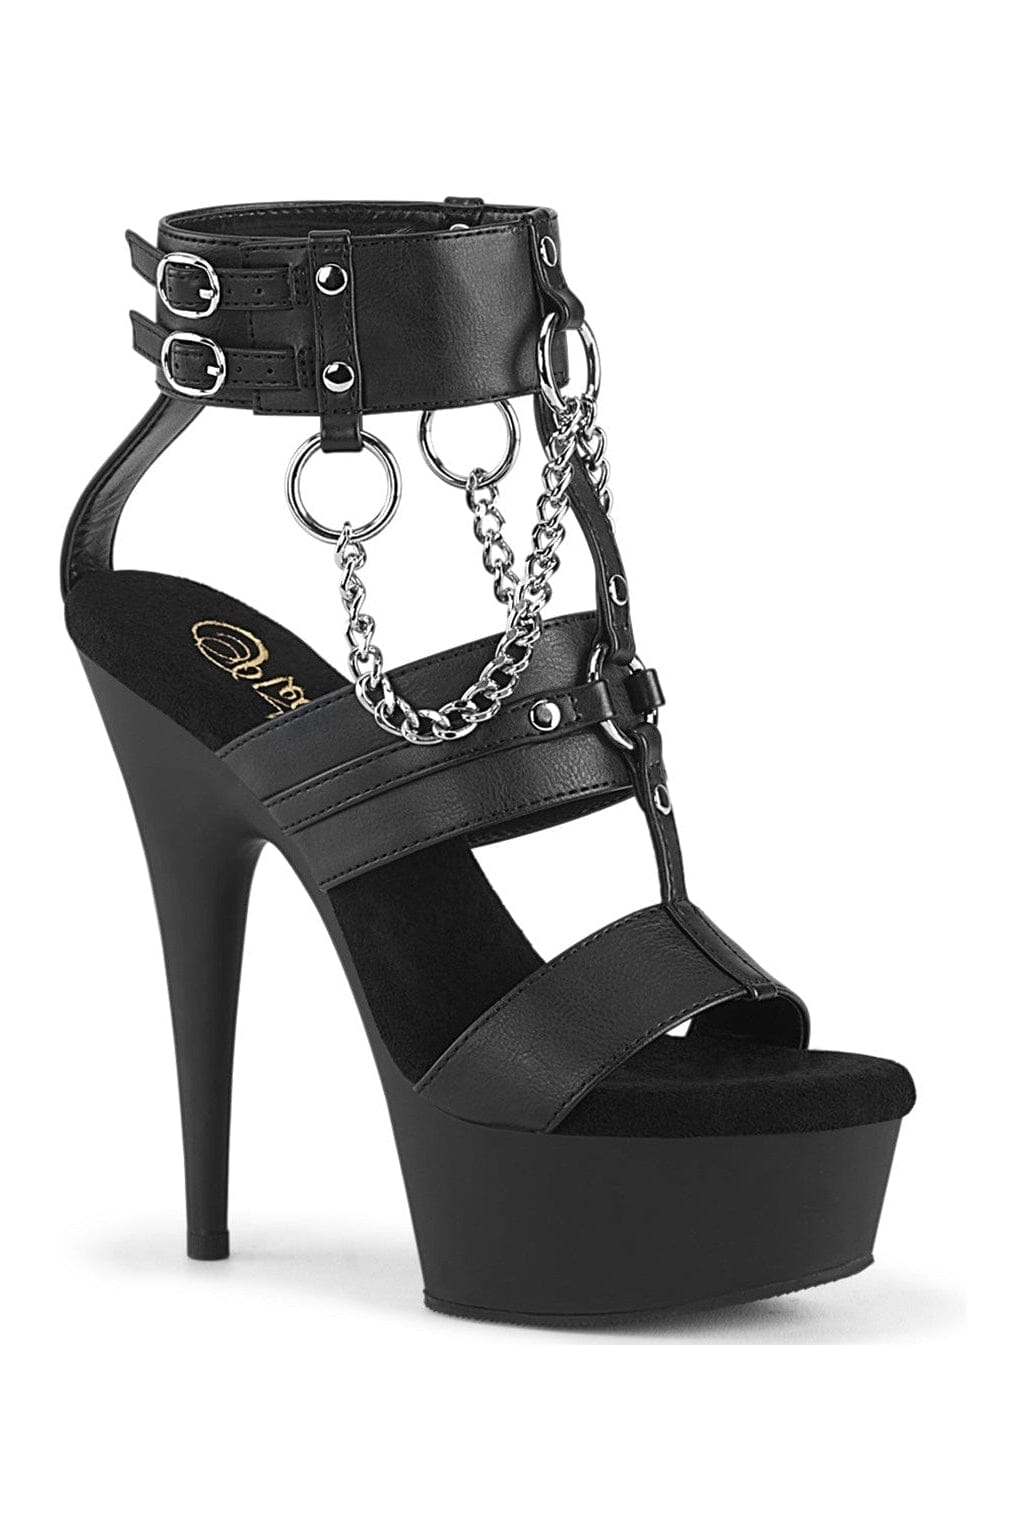 DELIGHT-661 Black Faux Leather Sandal-Sandals-Pleaser-Black-10-Faux Leather-SEXYSHOES.COM